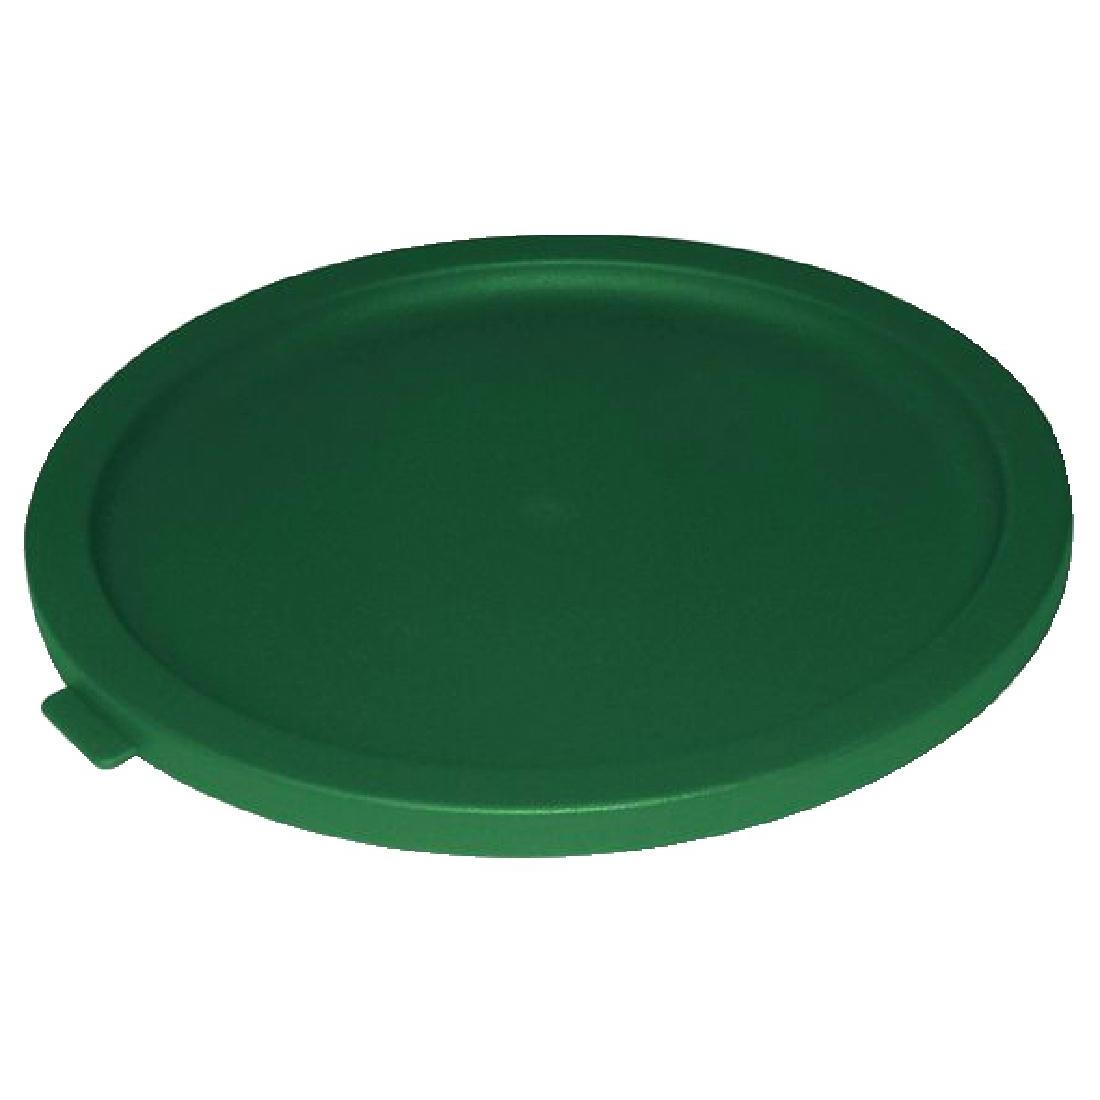 Vogue Round Food Storage Container Lid Green Medium - Each - CF059 - 1